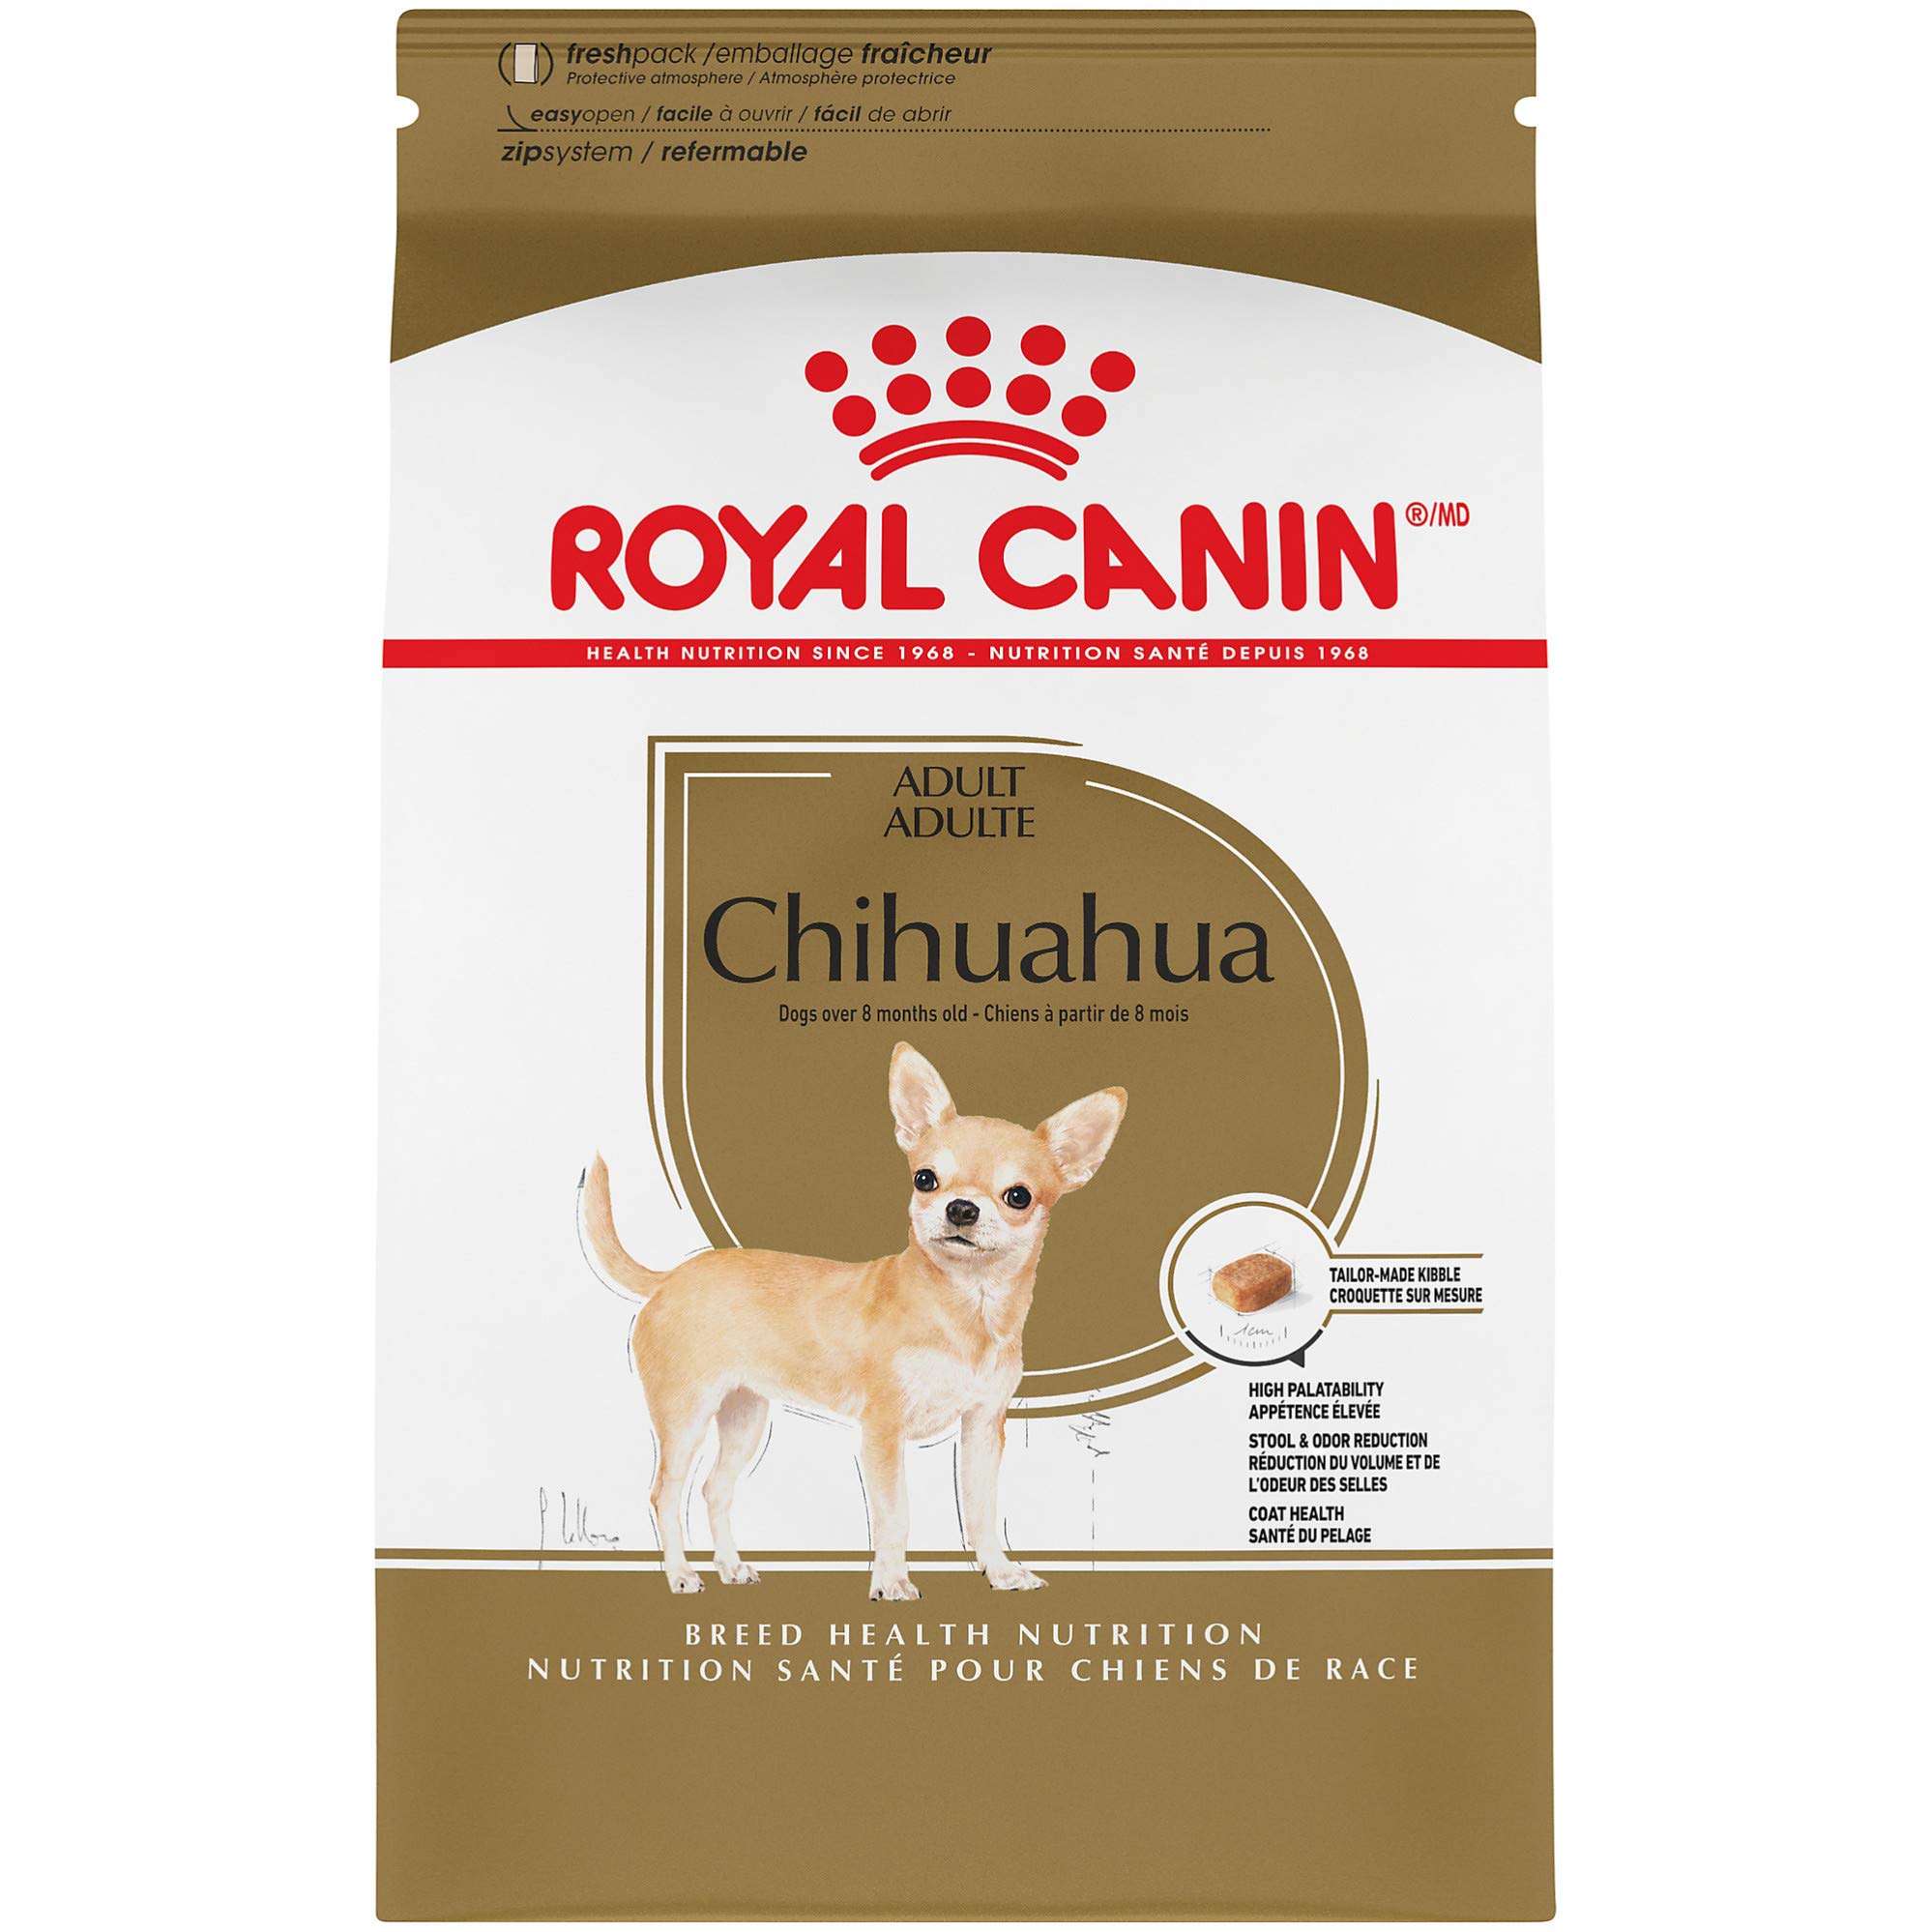 Royal Canin 品種健康栄養チワワ成犬用ドライドッグフード